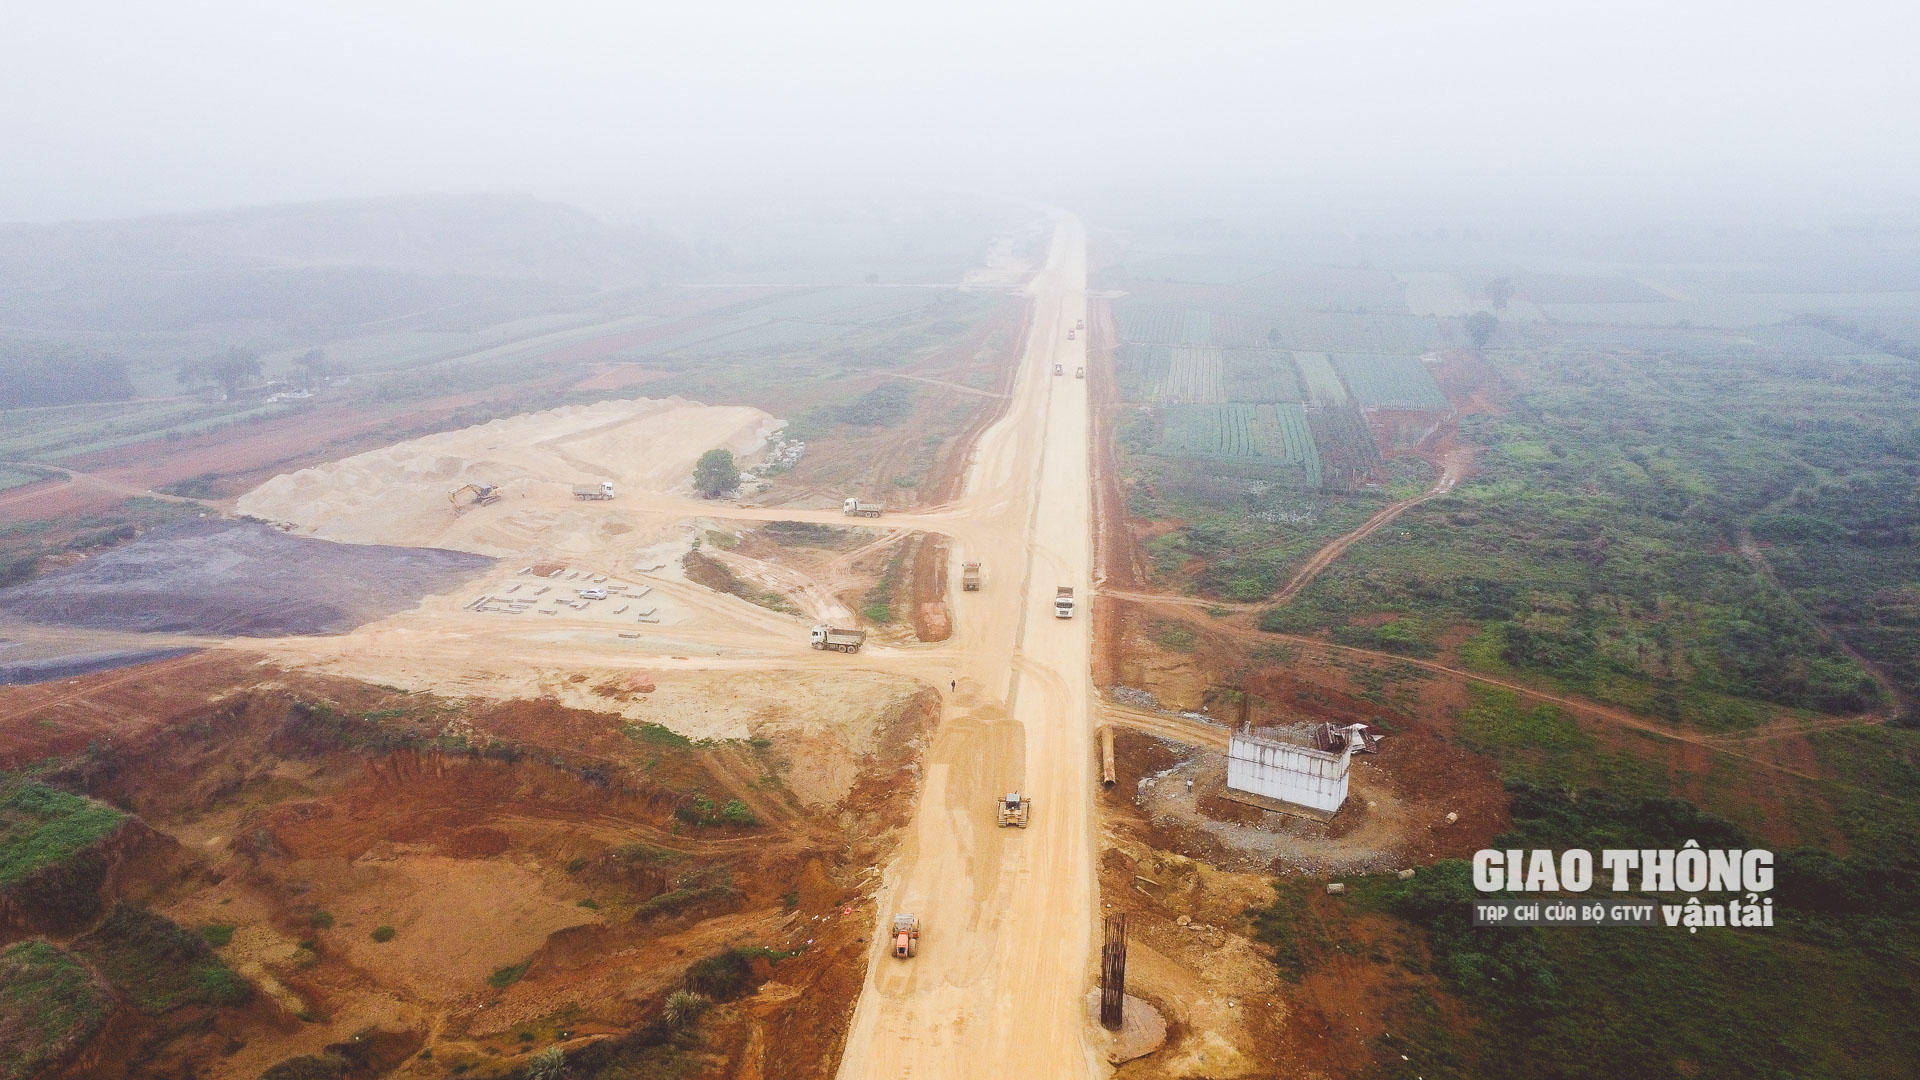 Theo Bộ trưởng Nguyễn Văn Thể, cao tốc Khánh Hòa-Buôn Ma Thuột, Biên Hòa-Vũng Tàu và Châu Đốc-Cần Thơ-Sóc Trăng có thể cơ bản hoàn thành vào năm 2026. (Ảnh minh họa)